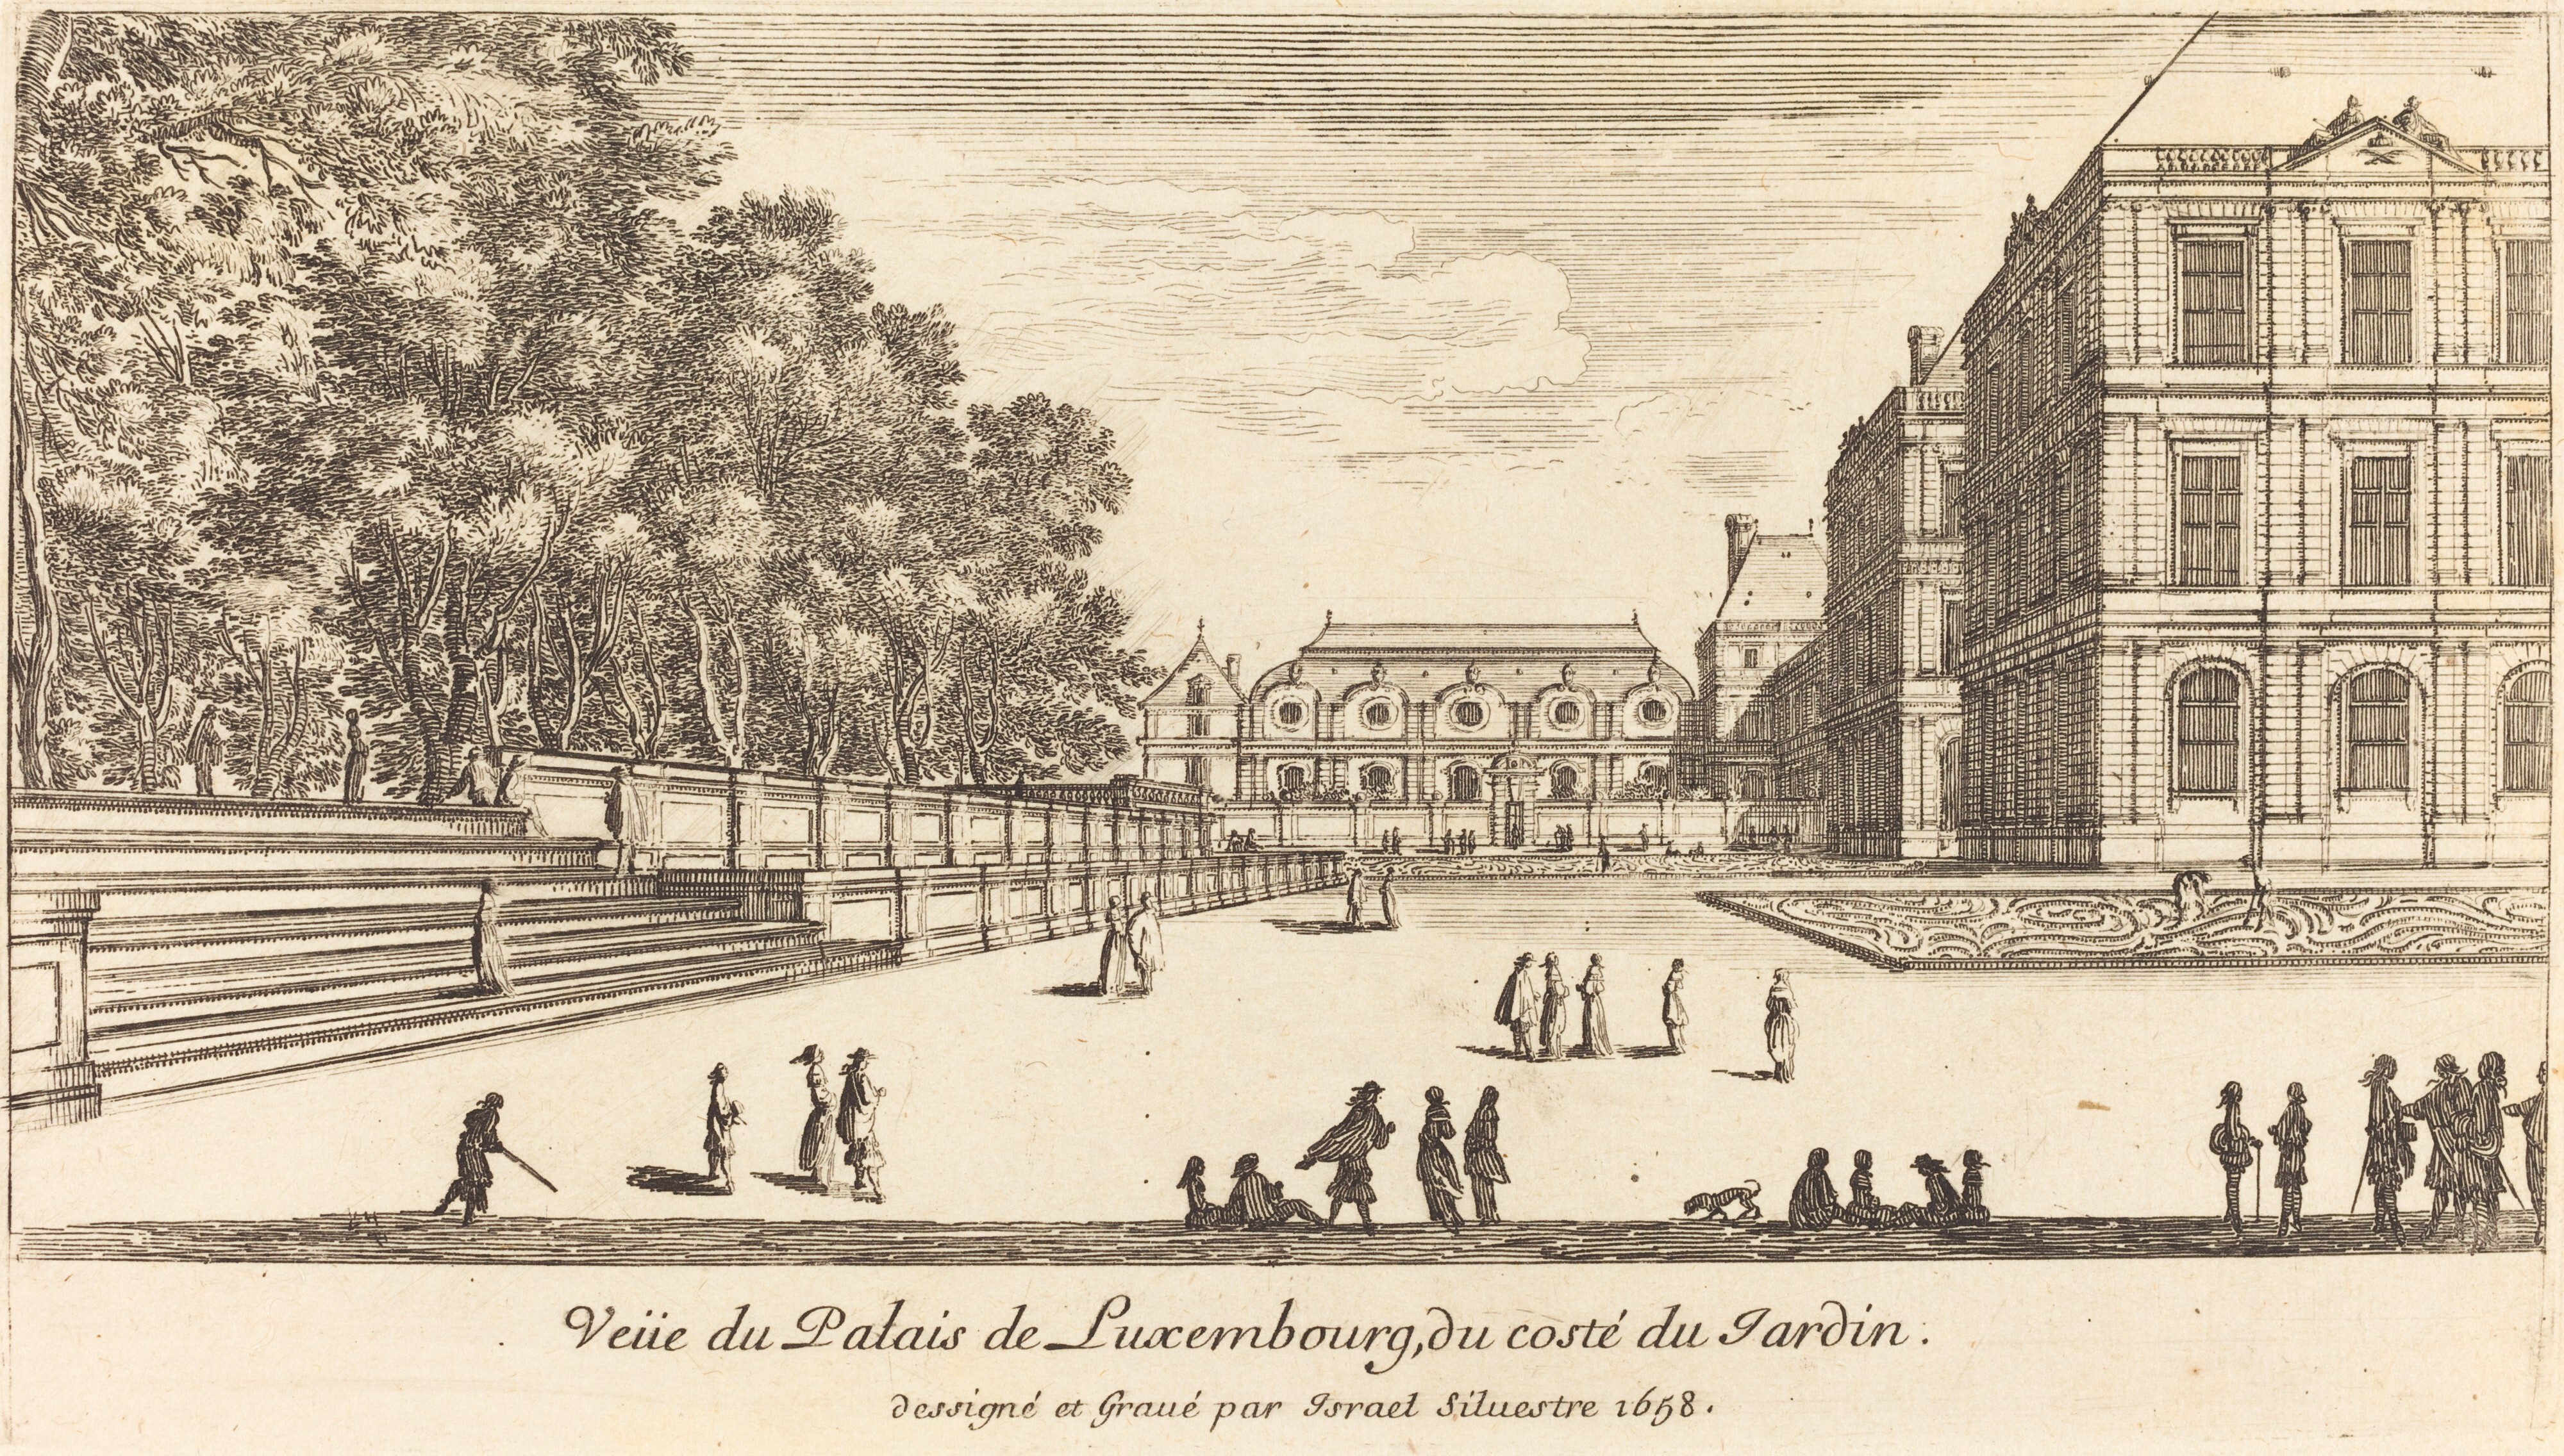 Israël Silvestre : Veüe du Palais de Luxembourg, du costé du Jardin.